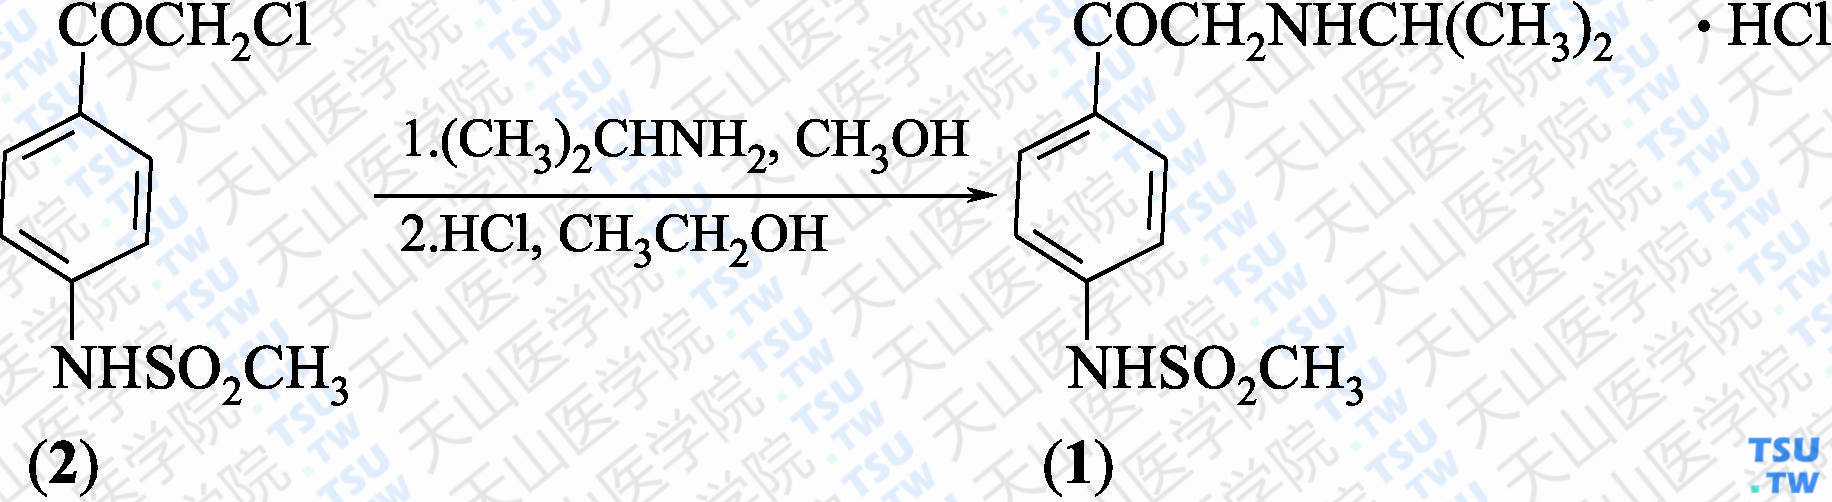 4'-（2-异丙氨基乙酰基）甲磺酰基苯胺盐酸盐（分子式：C<sub>12</sub>H<sub>18</sub>N<sub>2</sub>O<sub>3</sub>S·HCl）的合成方法路线及其结构式